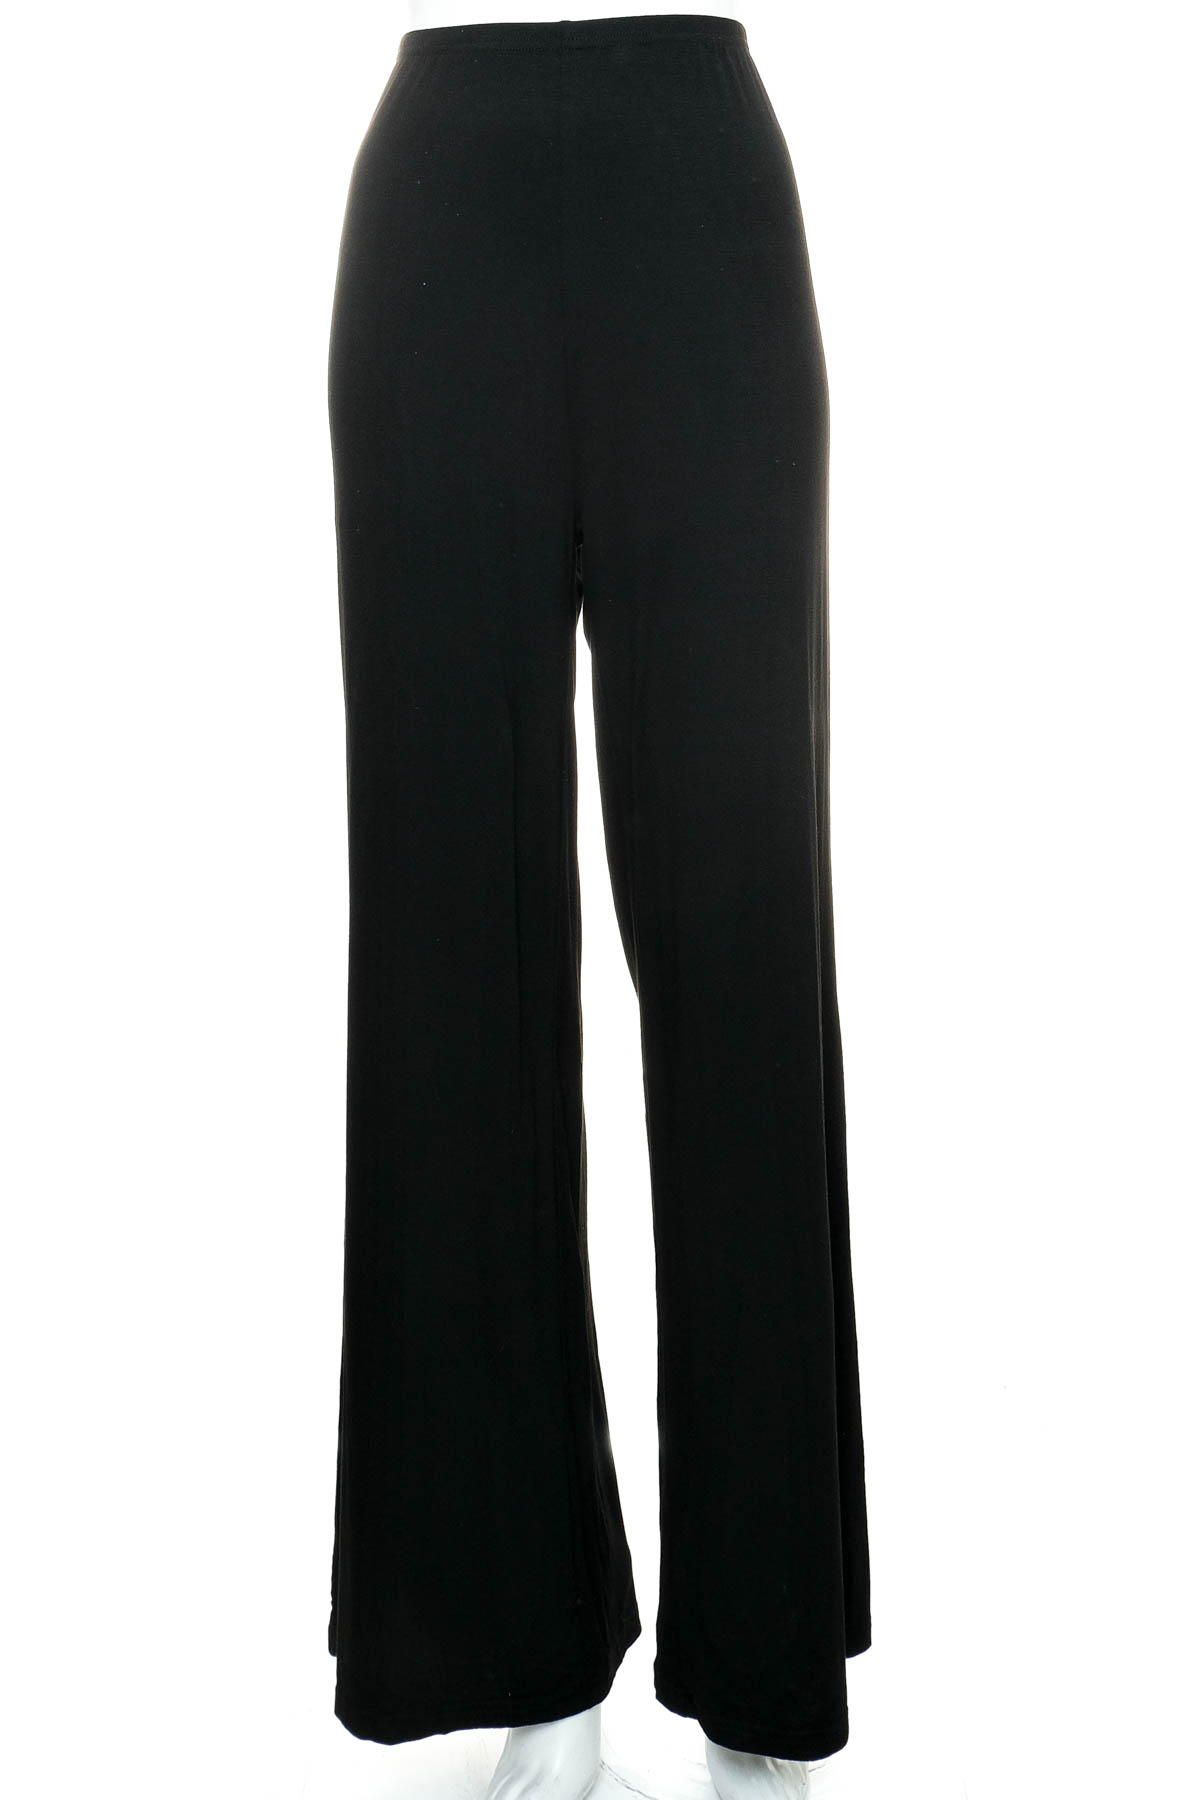 Women's trousers - SHEIN - 0